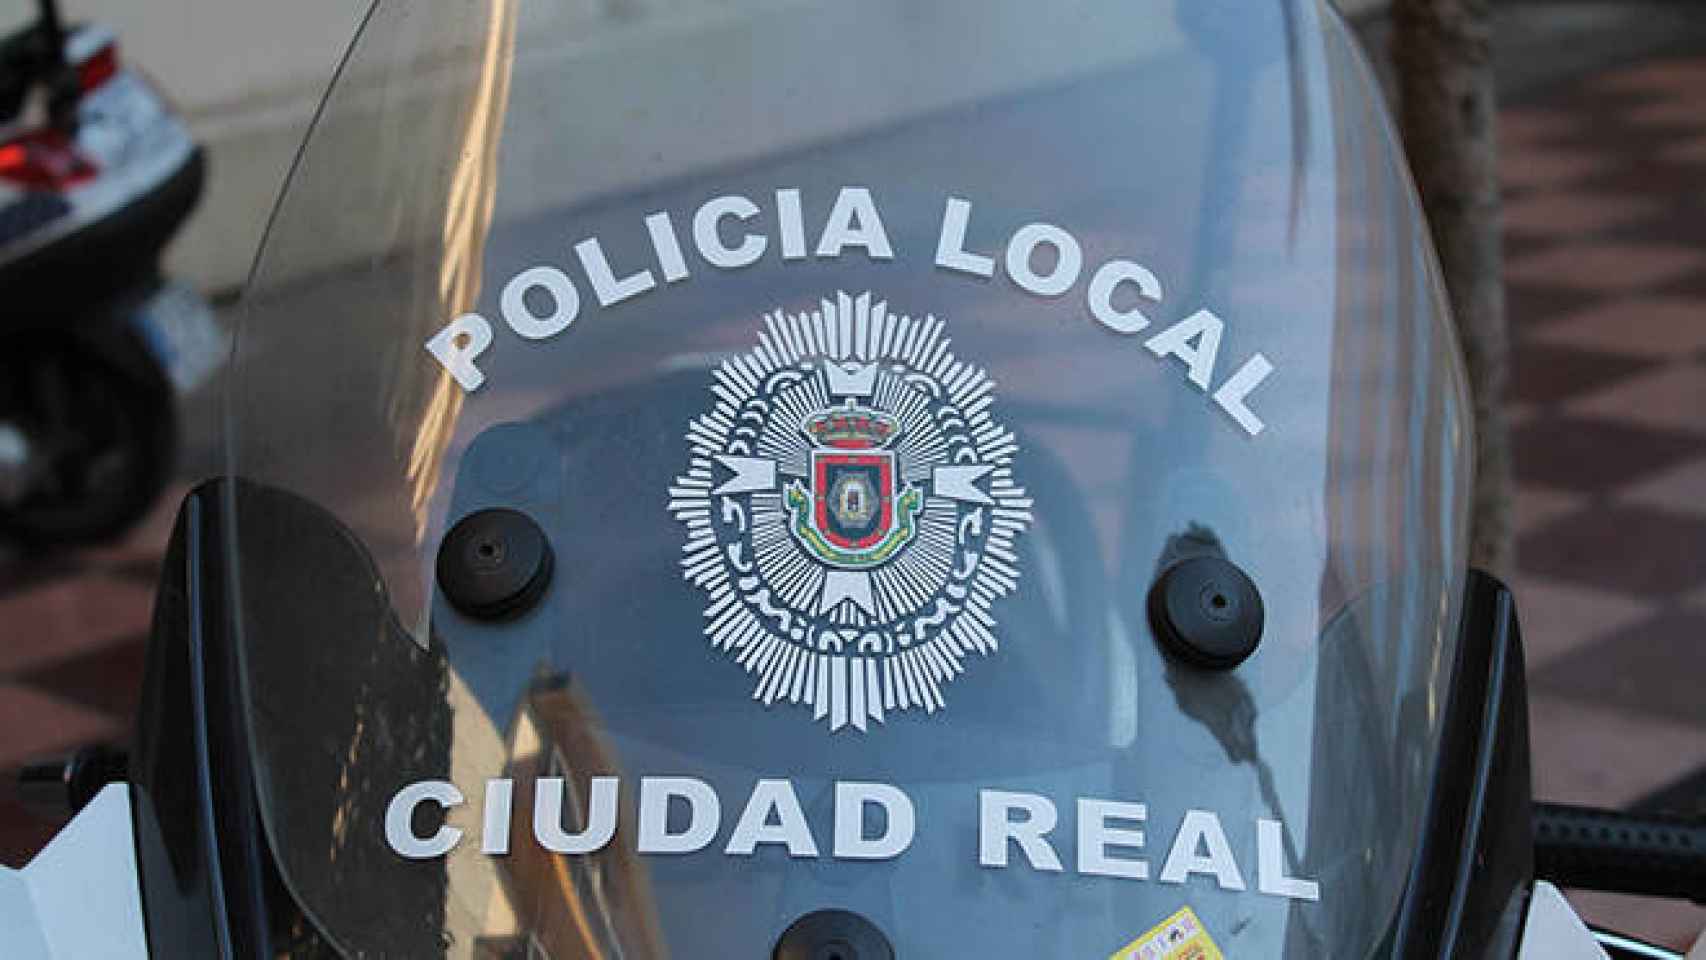 FOTO: Policía Local de Ciudad Real (Twitter)